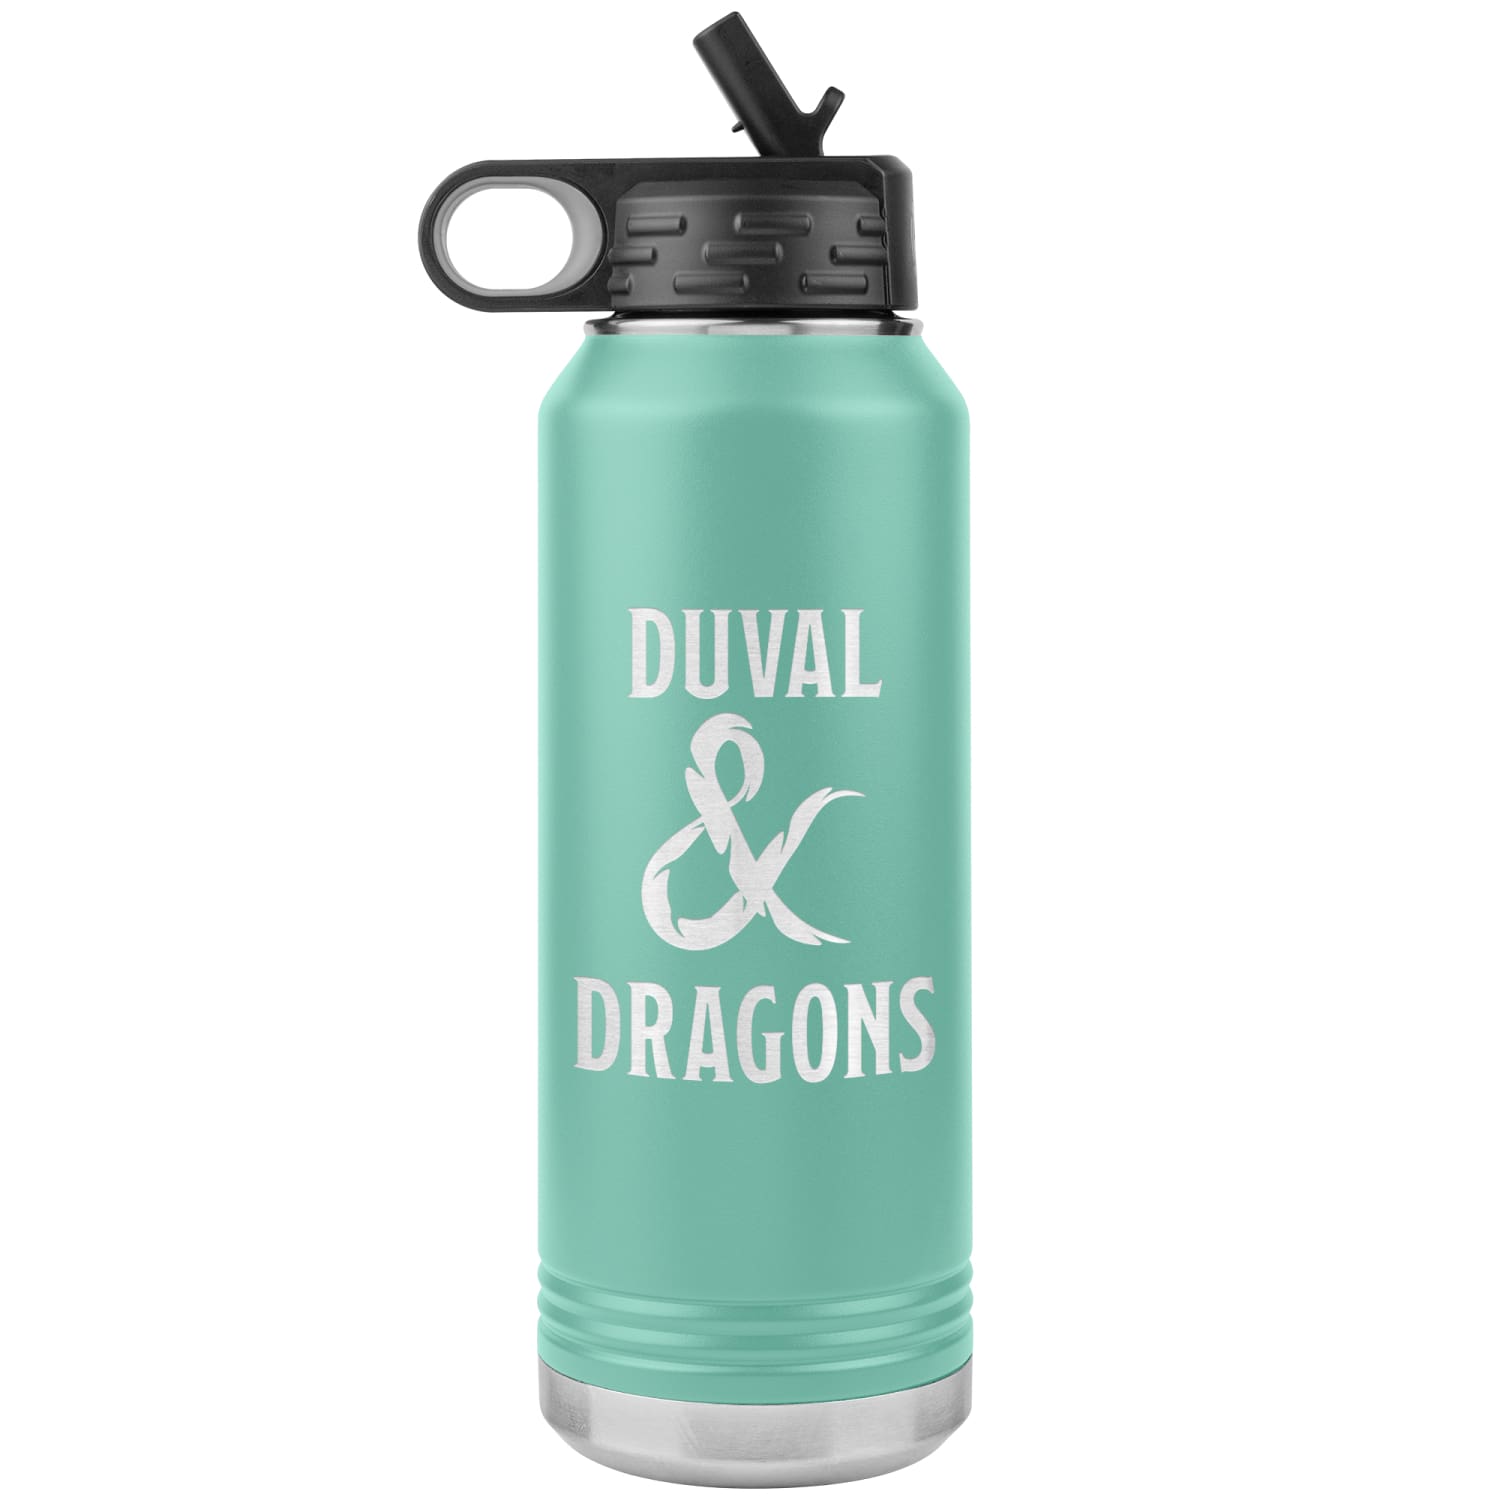 Duval & Dragons Logo 32oz Water Bottle Tumbler - Teal - Tumblers